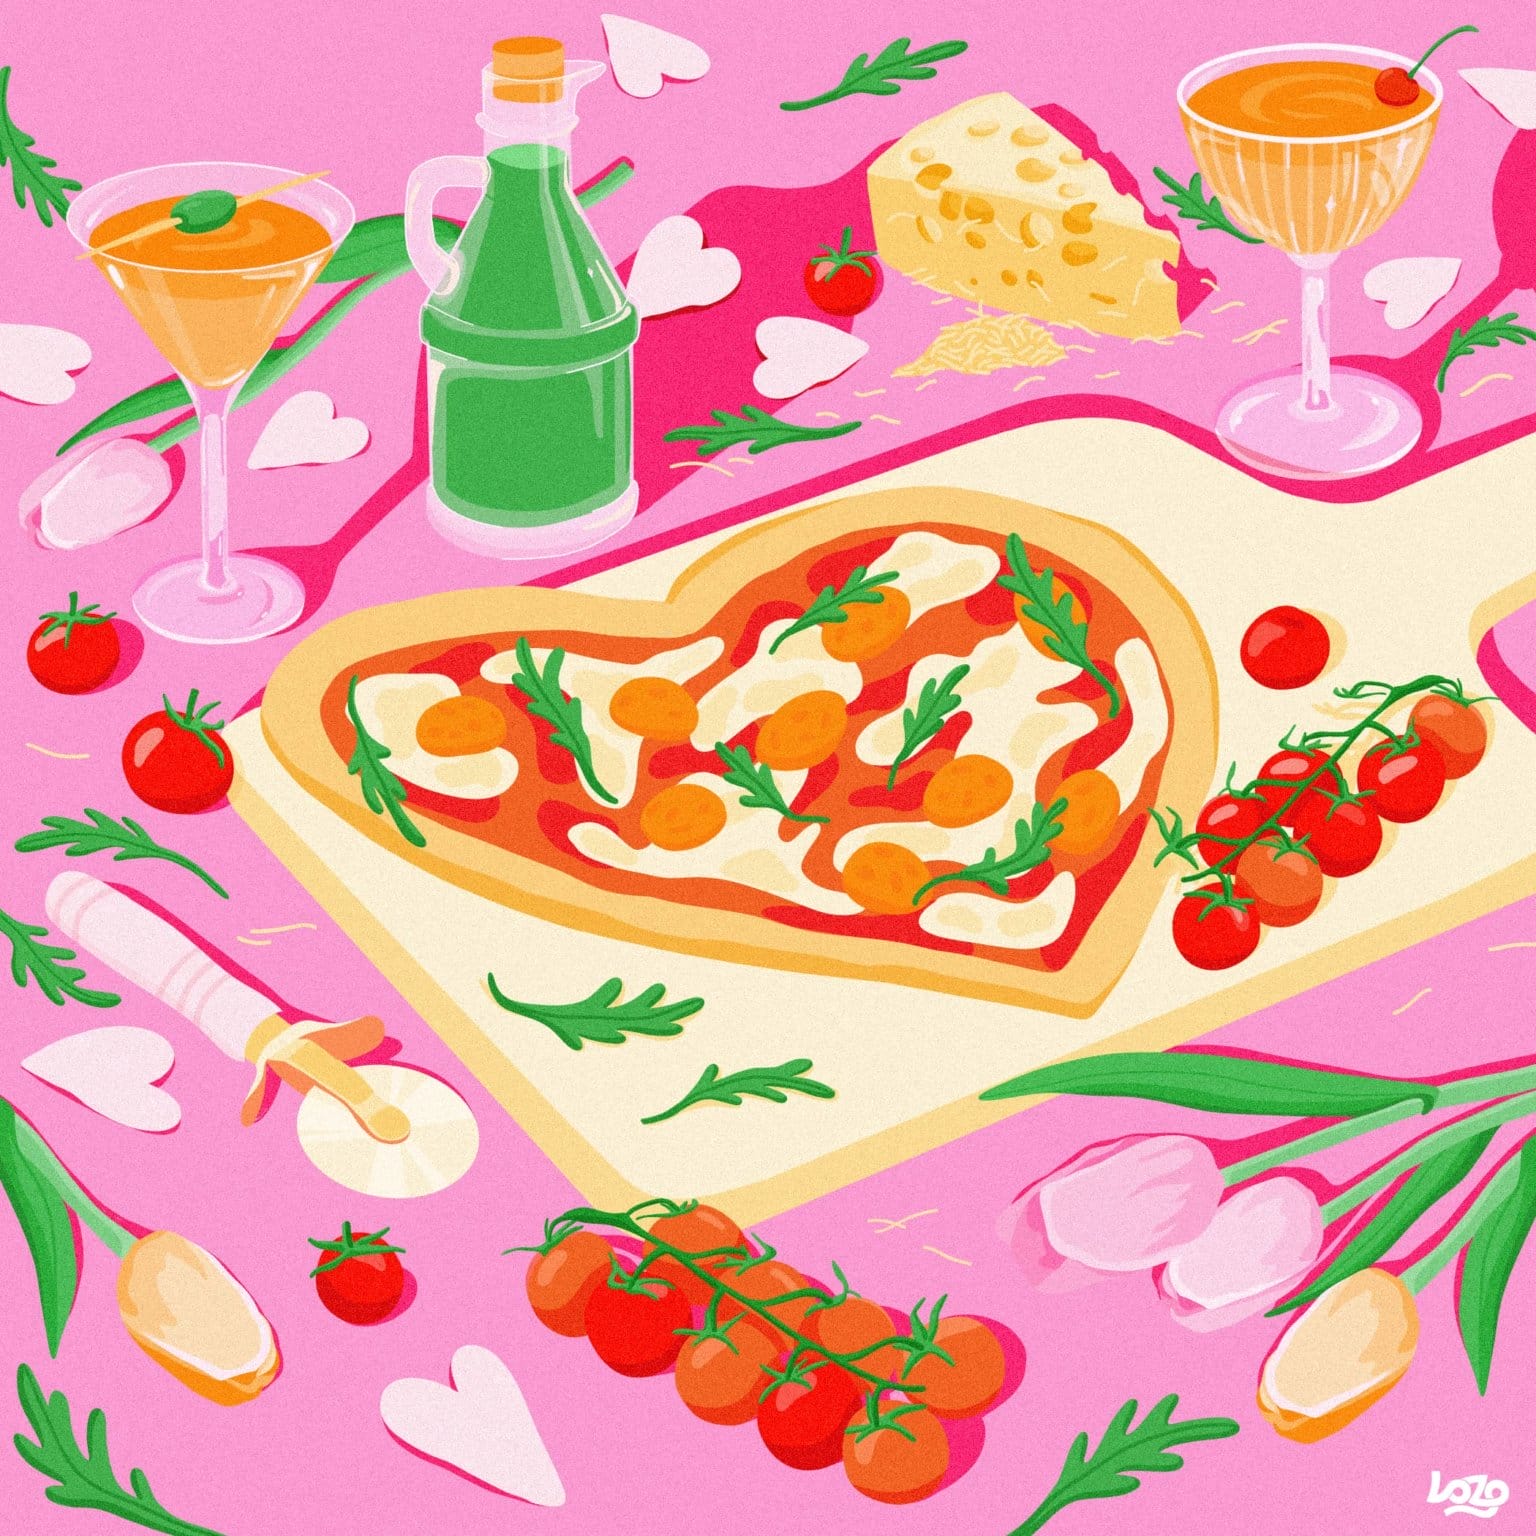 Pizza sur planche, fond rose et éléments colorés